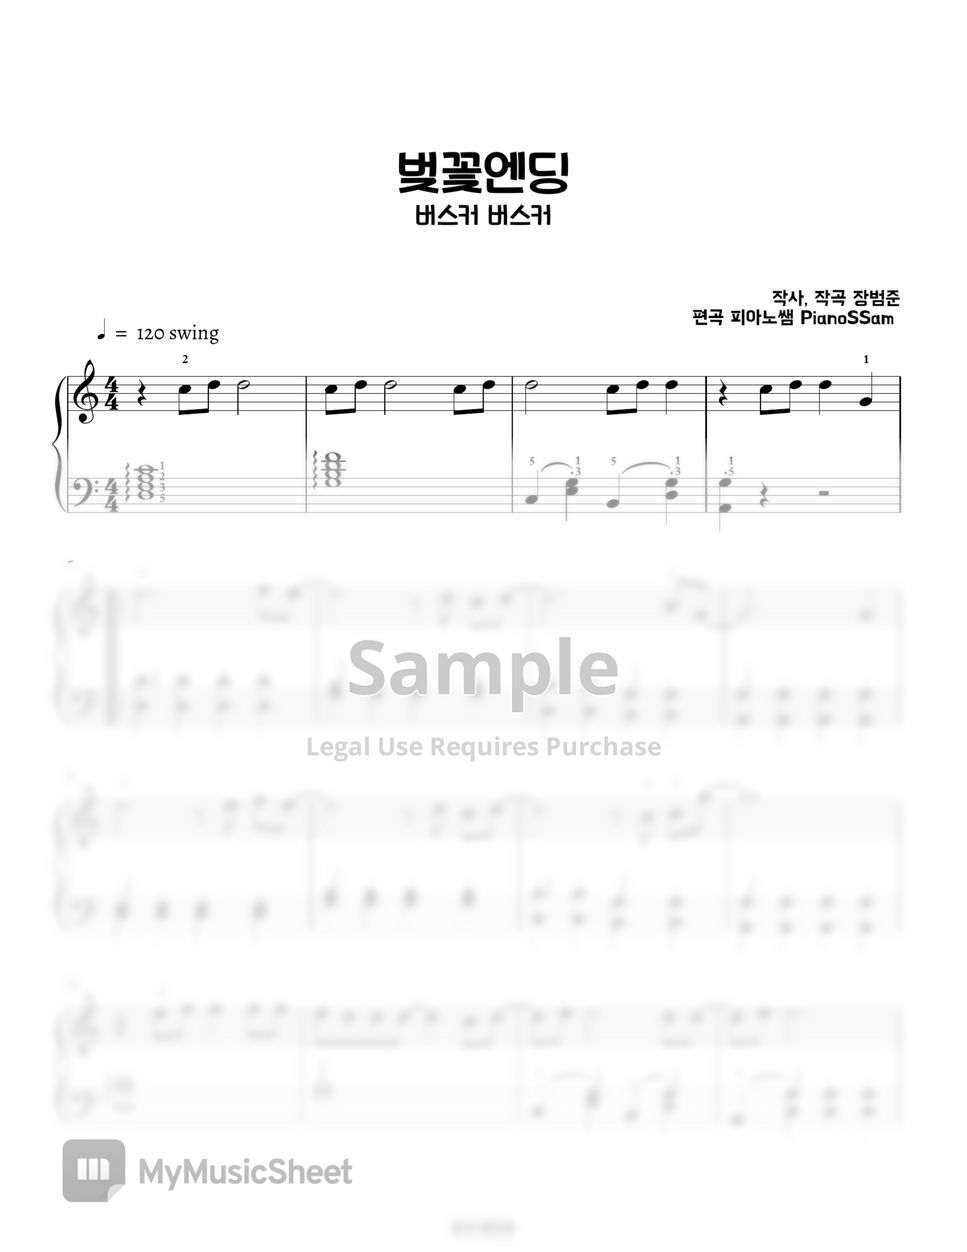 장범준 - 벚꽃엔딩 Piano Arrangement in C major (버스커버스커) by PianoSSam